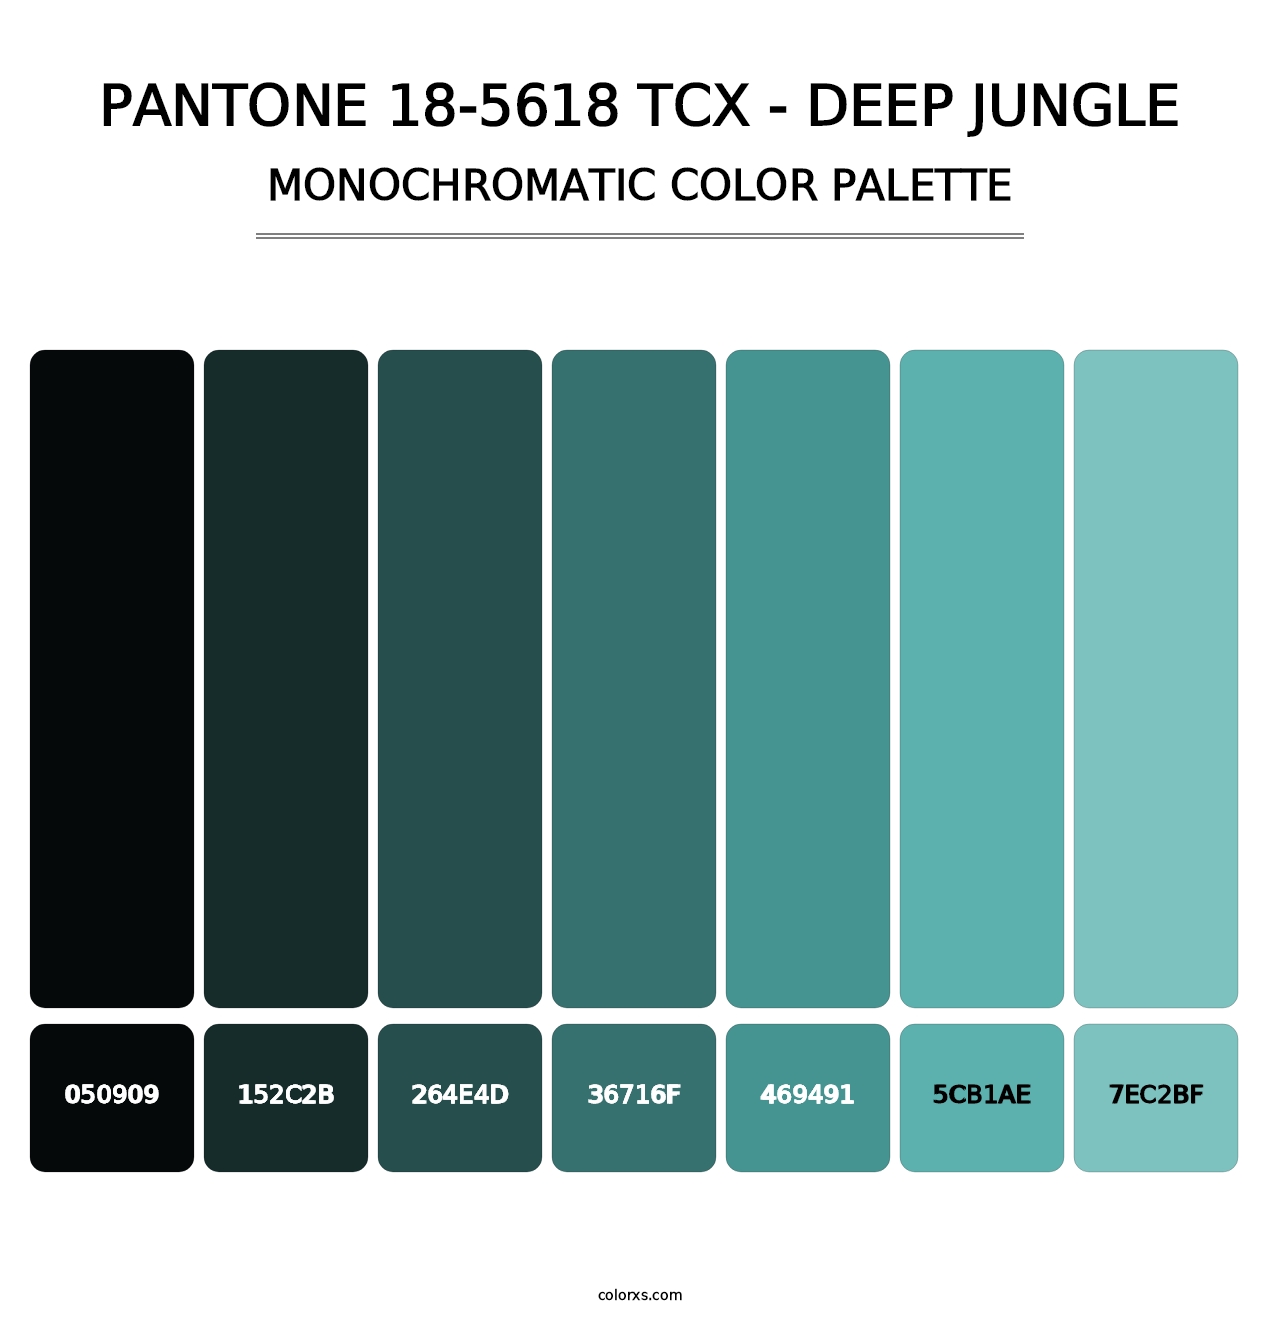 PANTONE 18-5618 TCX - Deep Jungle - Monochromatic Color Palette